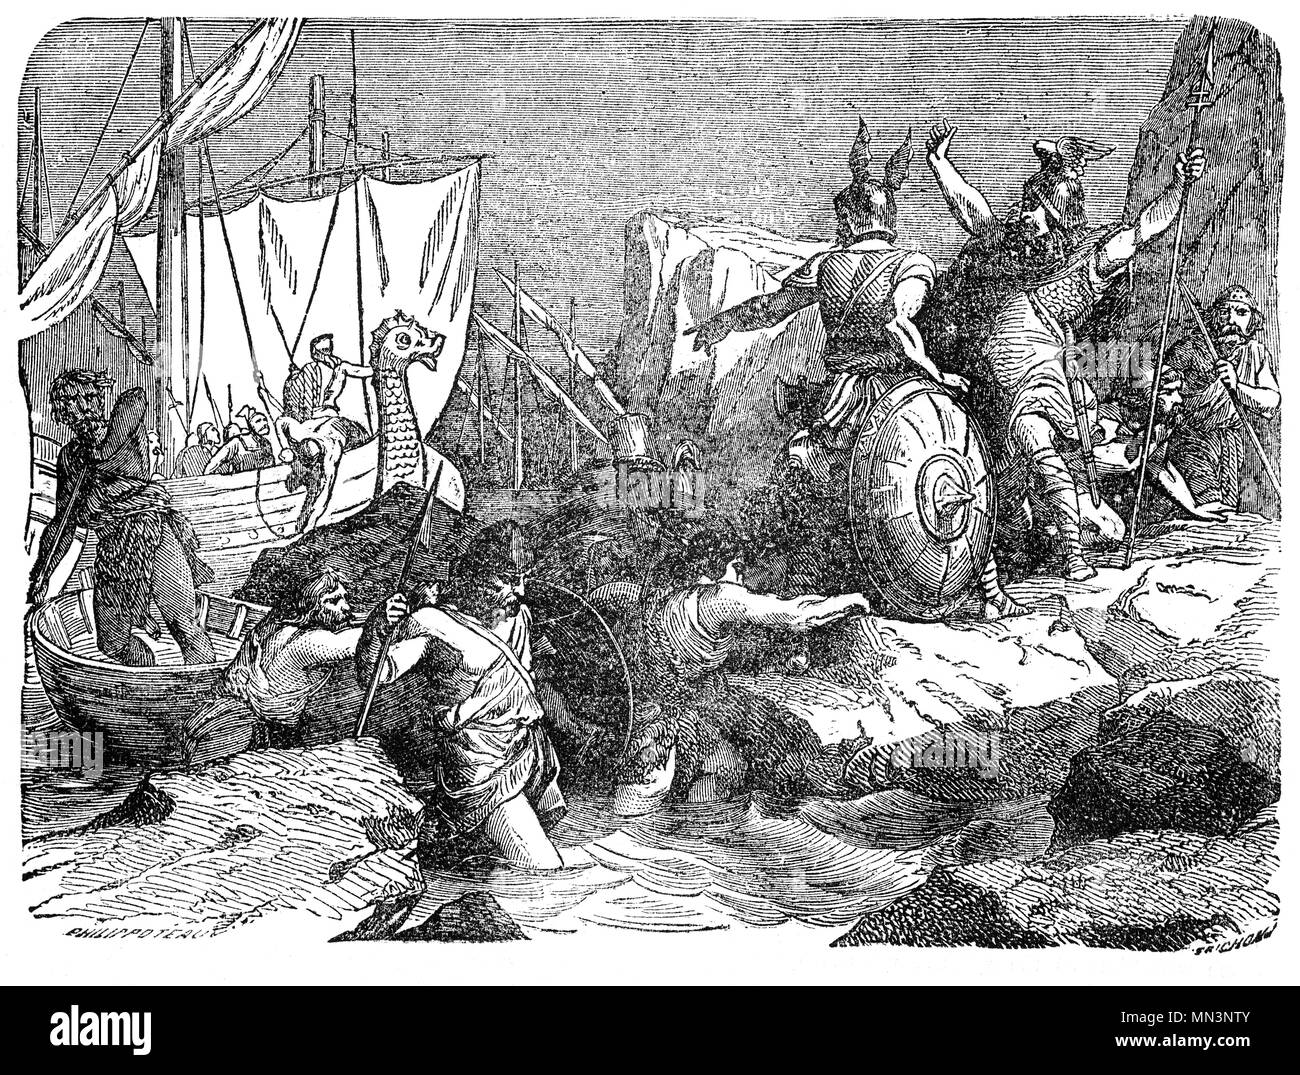 L'invasion des Saxons sous Hengist et Horsa. Ils étaient frères et chefs des premières légendaire des colons anglo-saxons en Grande-Bretagne qui a atterri à Ebbsfleet, Kent, et qu'Horsa est tué à Aegelsthrep (éventuellement Aylesford, Kent) en 455BC. Hengist devint roi en 455 jusqu'à sa mort en 488 BNC au cours desquels il a combattu contre les Bretons. Les rois de Kent historique retracé leur descendance directe de Hengist. Banque D'Images